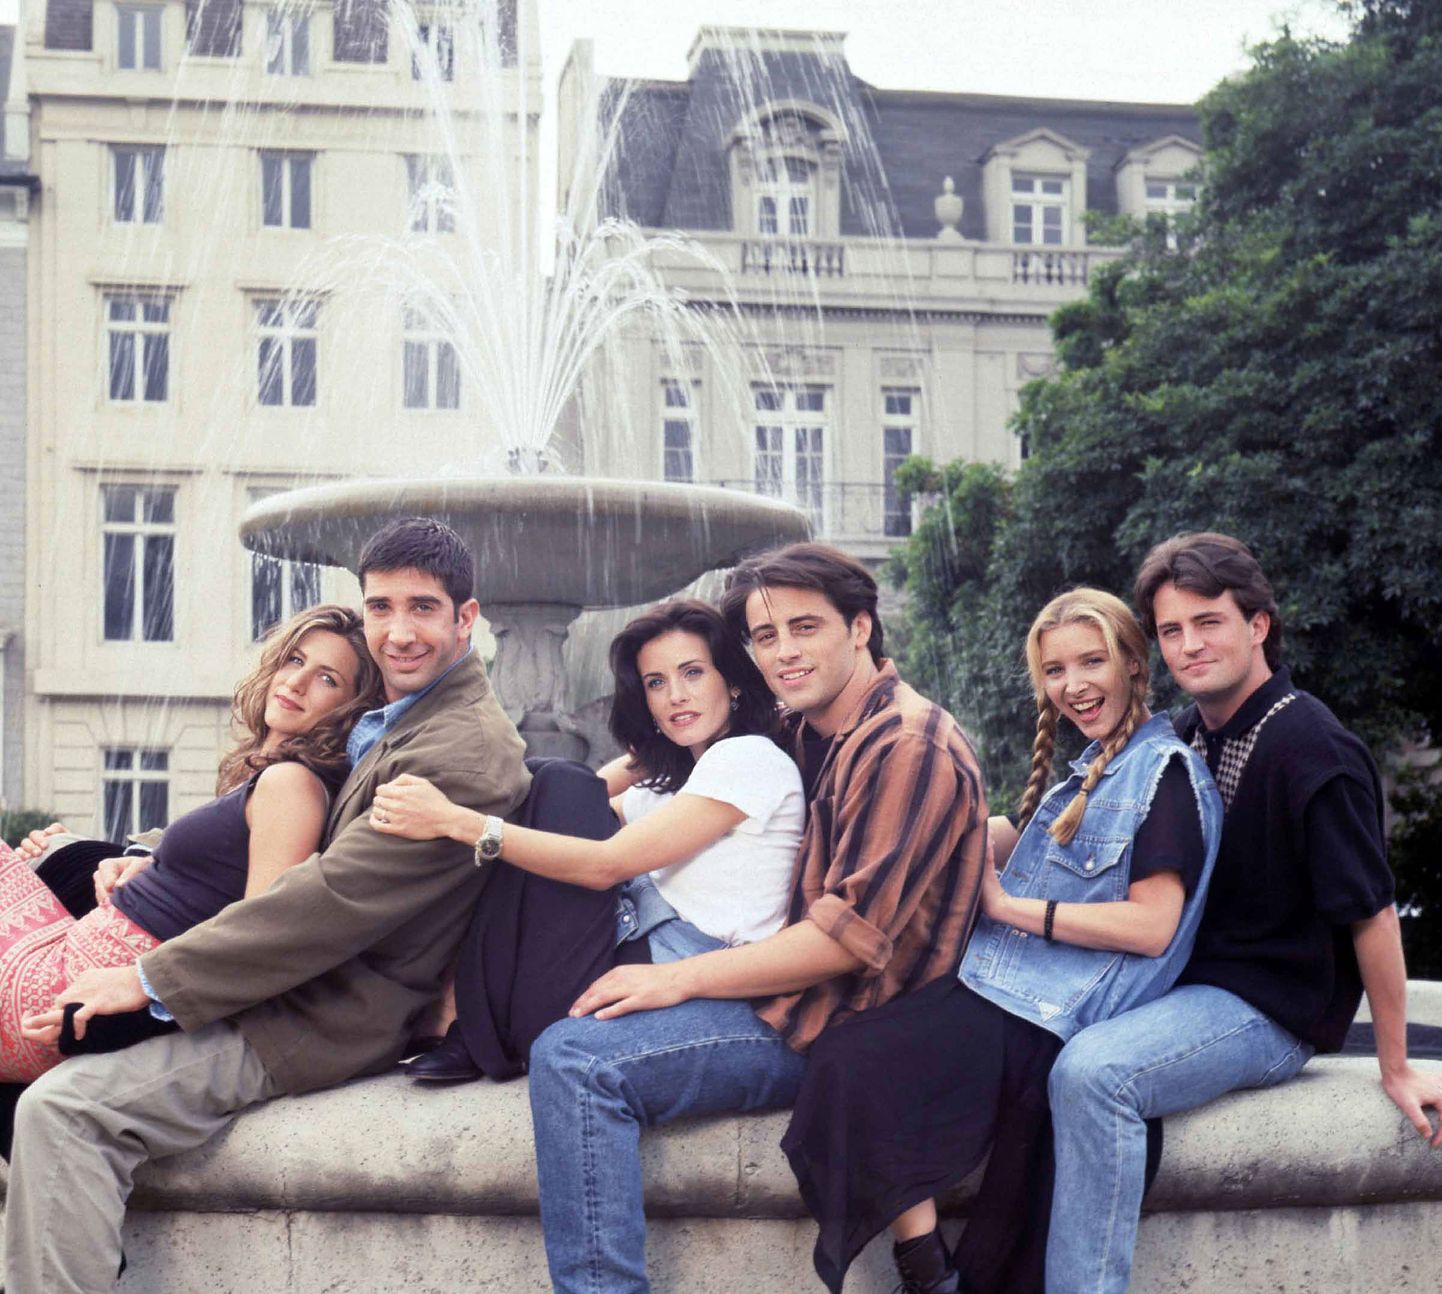 90ndatel aastatel oli «Sõbrad» üks maailma populaarseimaid seriaale. Nüüd lähevad selle 1996. aasta kalendrid müügiks kui soojad saiad.